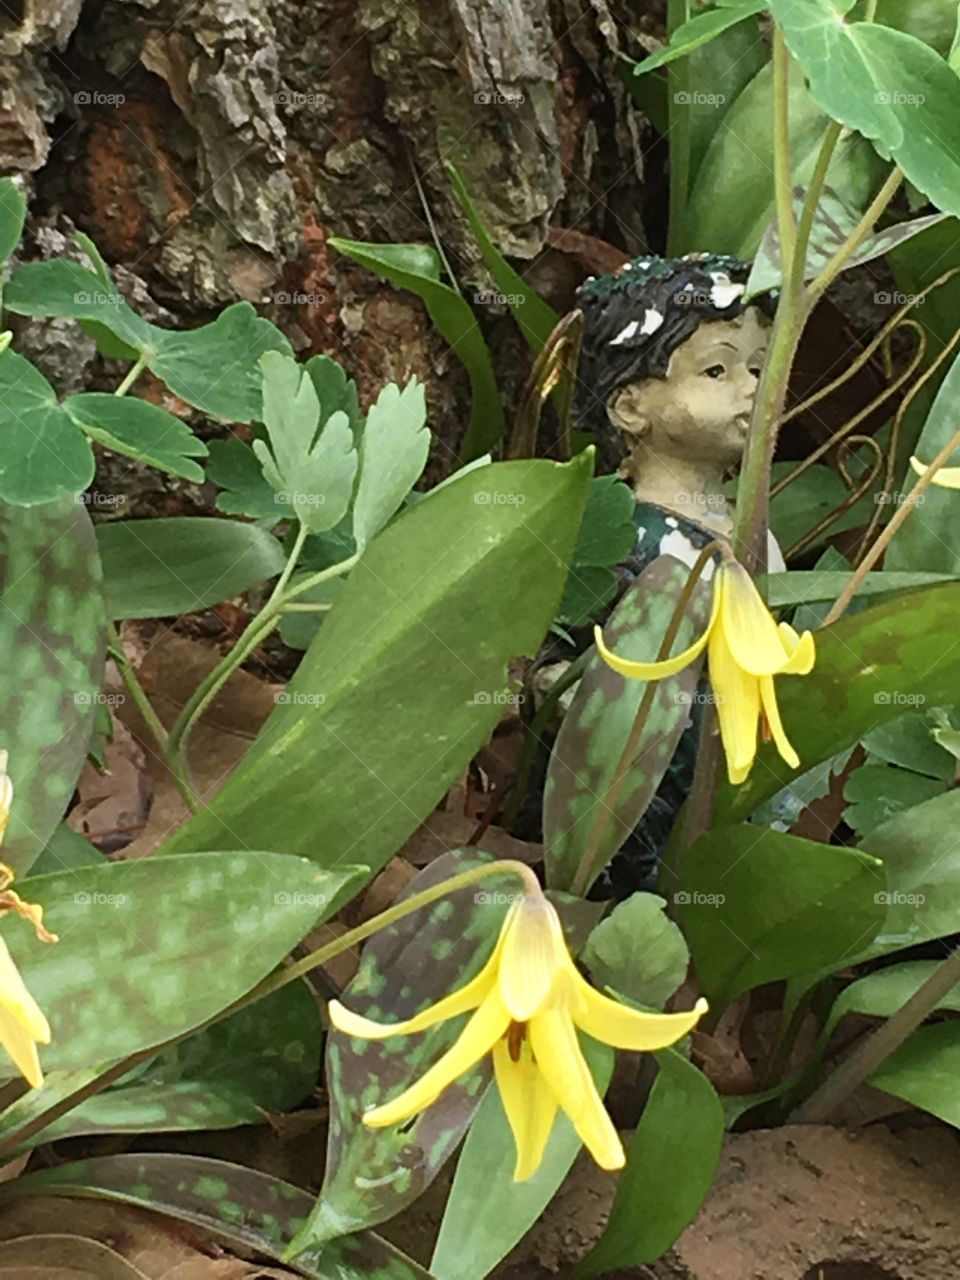 Elf boy hidden among flowers